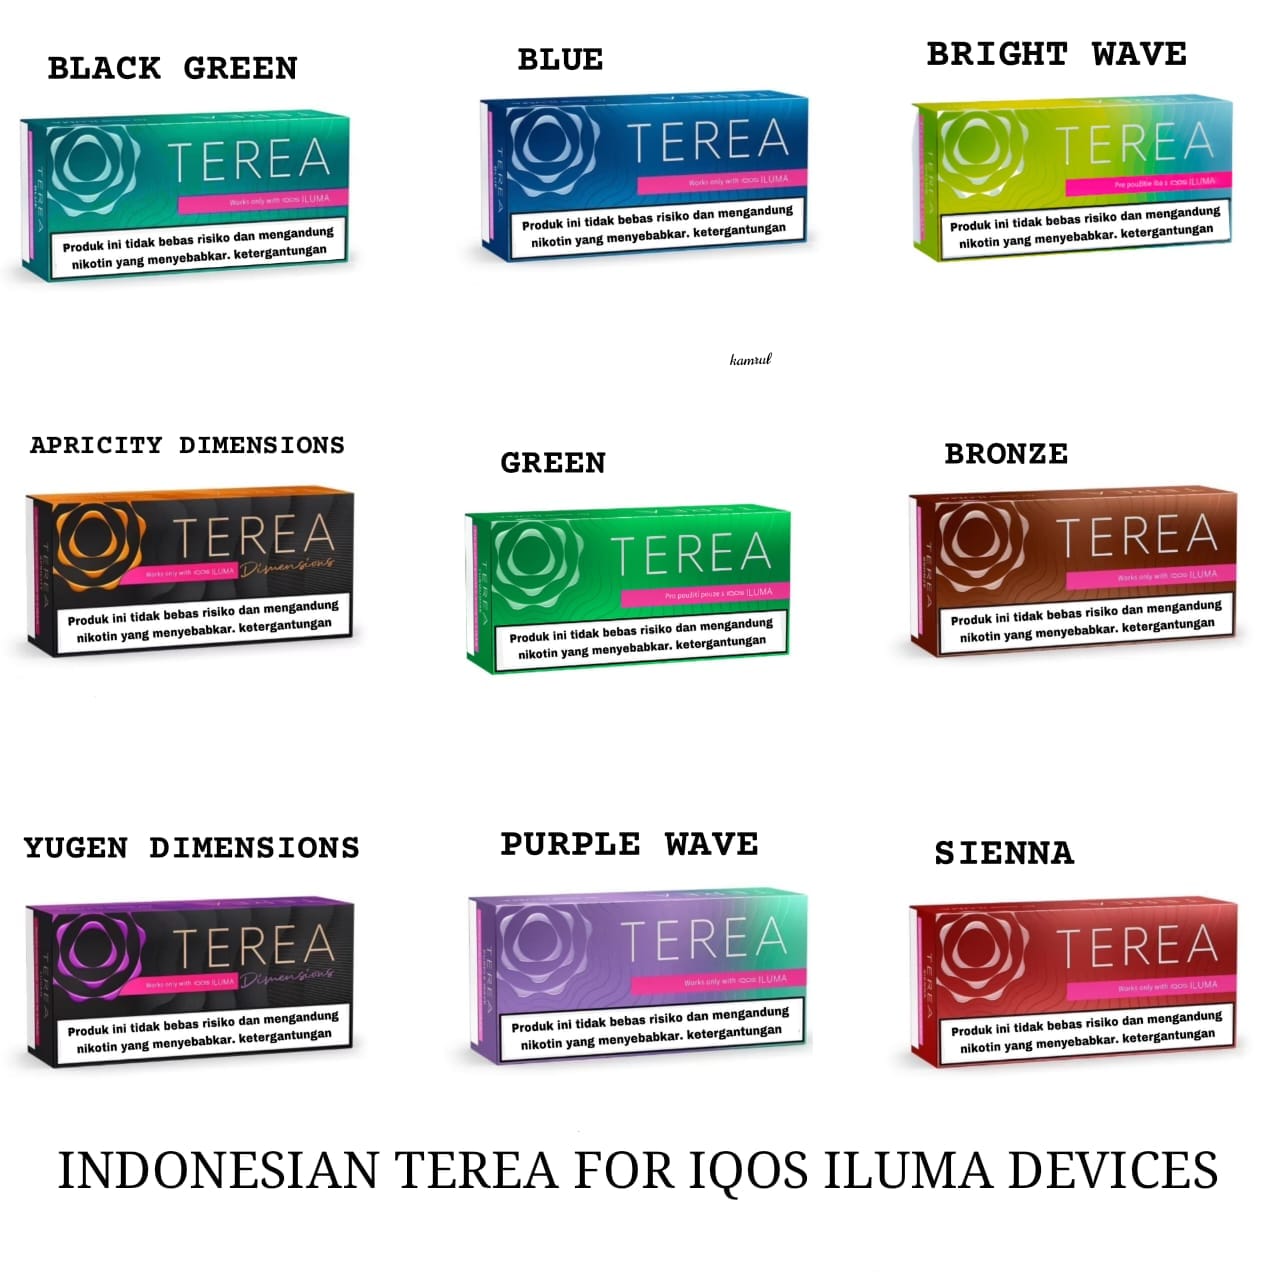 IQOS Terea Bronze Indonesian